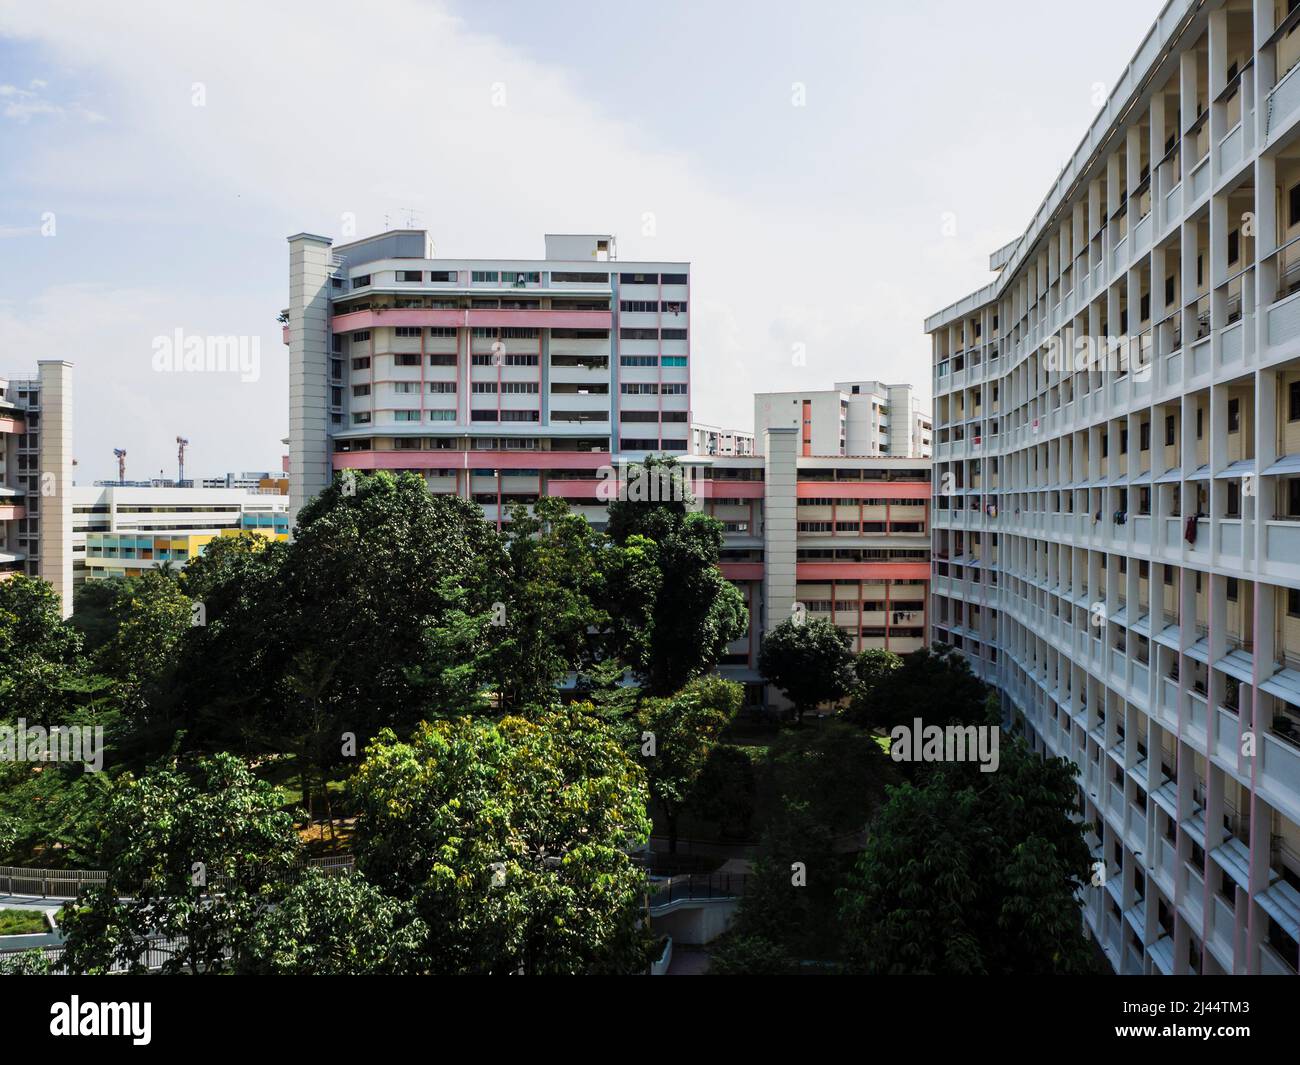 Vue en perspective d'un domaine résidentiel à Singapour. Immeubles d'appartements en hauteur à côté d'un parc de quartier. Banque D'Images